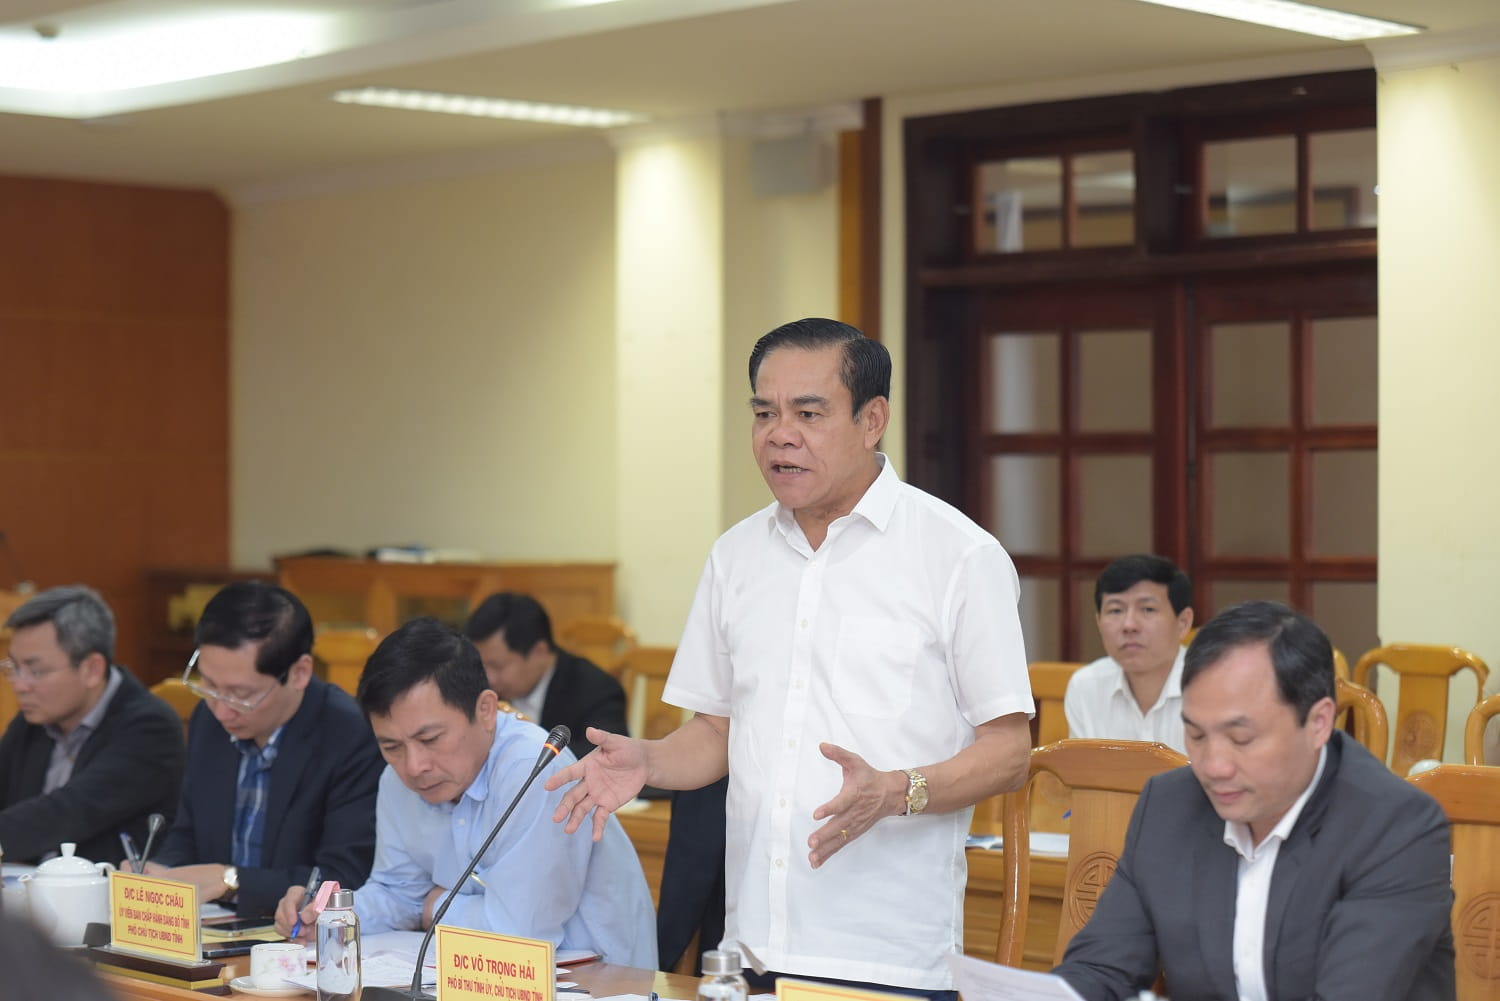 Đồng chí Phó Bí thư Tỉnh ủy, Chủ tịch UBND tỉnh, Võ Trọng Hải phát biểu tại sự kiện